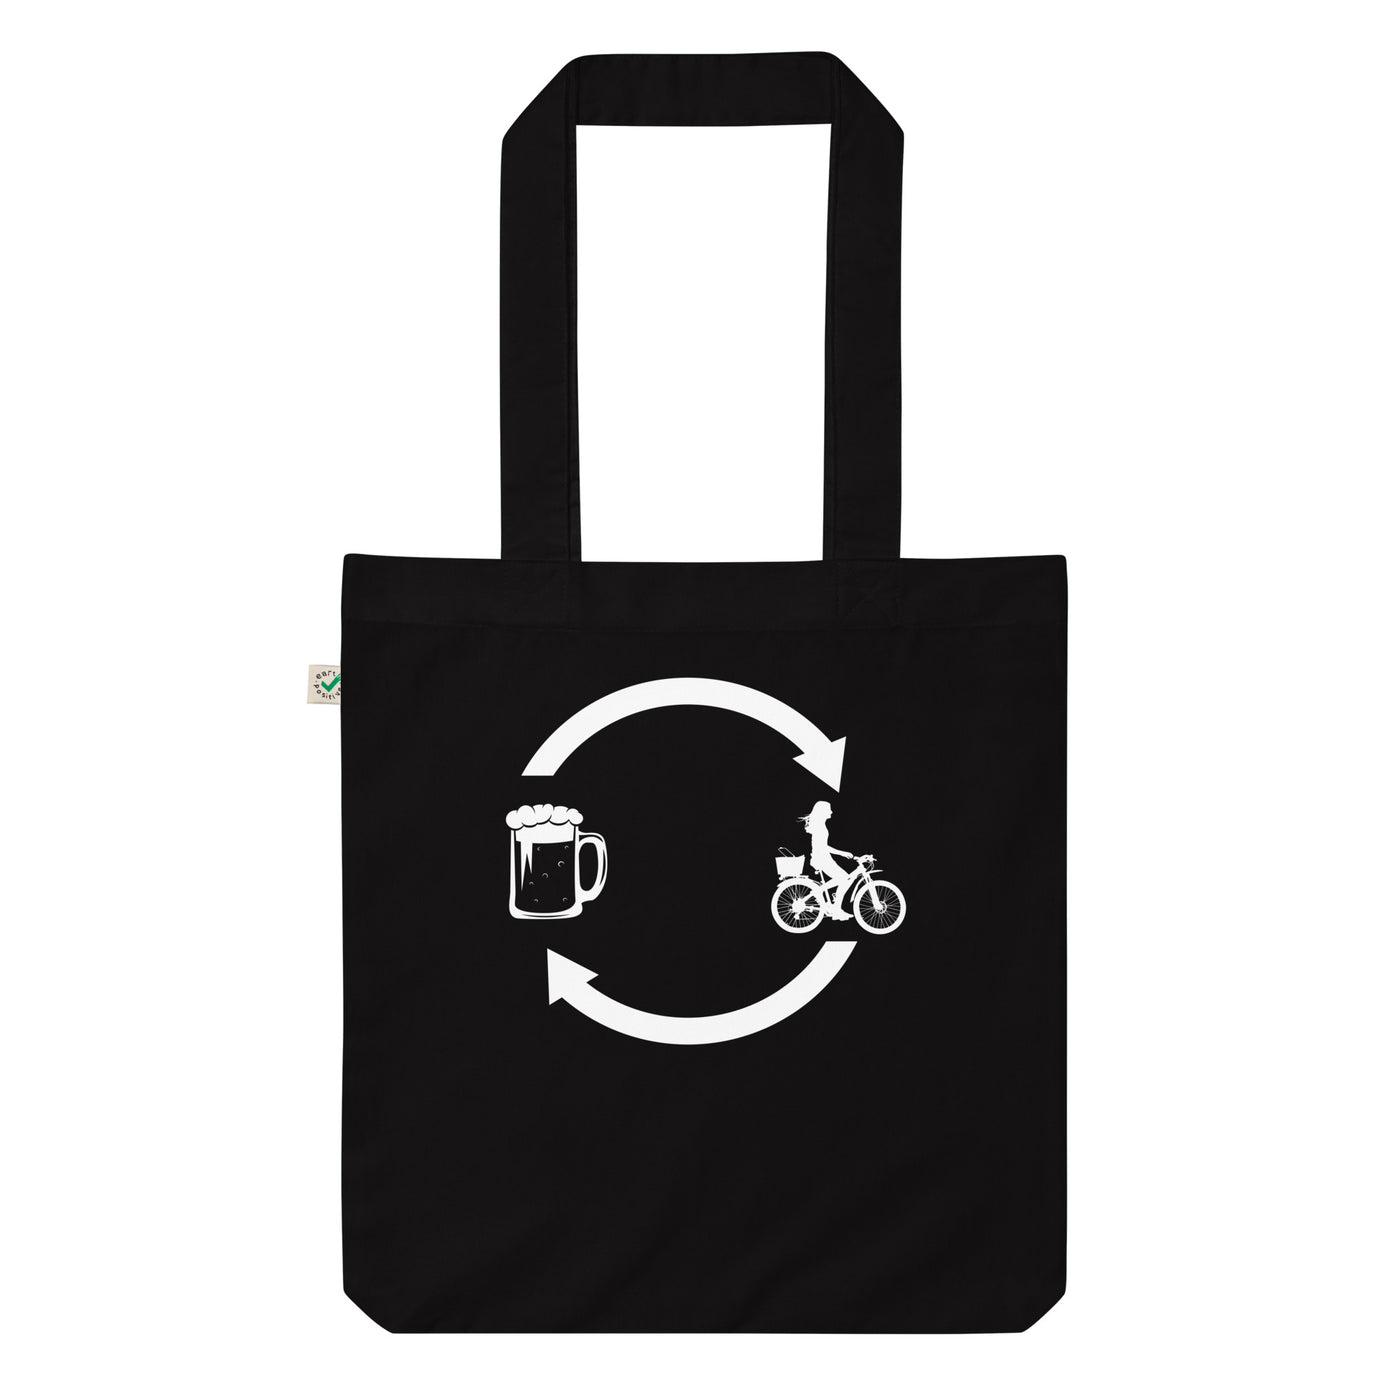 Bier, Ladende Pfeile Und Radfahren 2 - Organic Einkaufstasche fahrrad